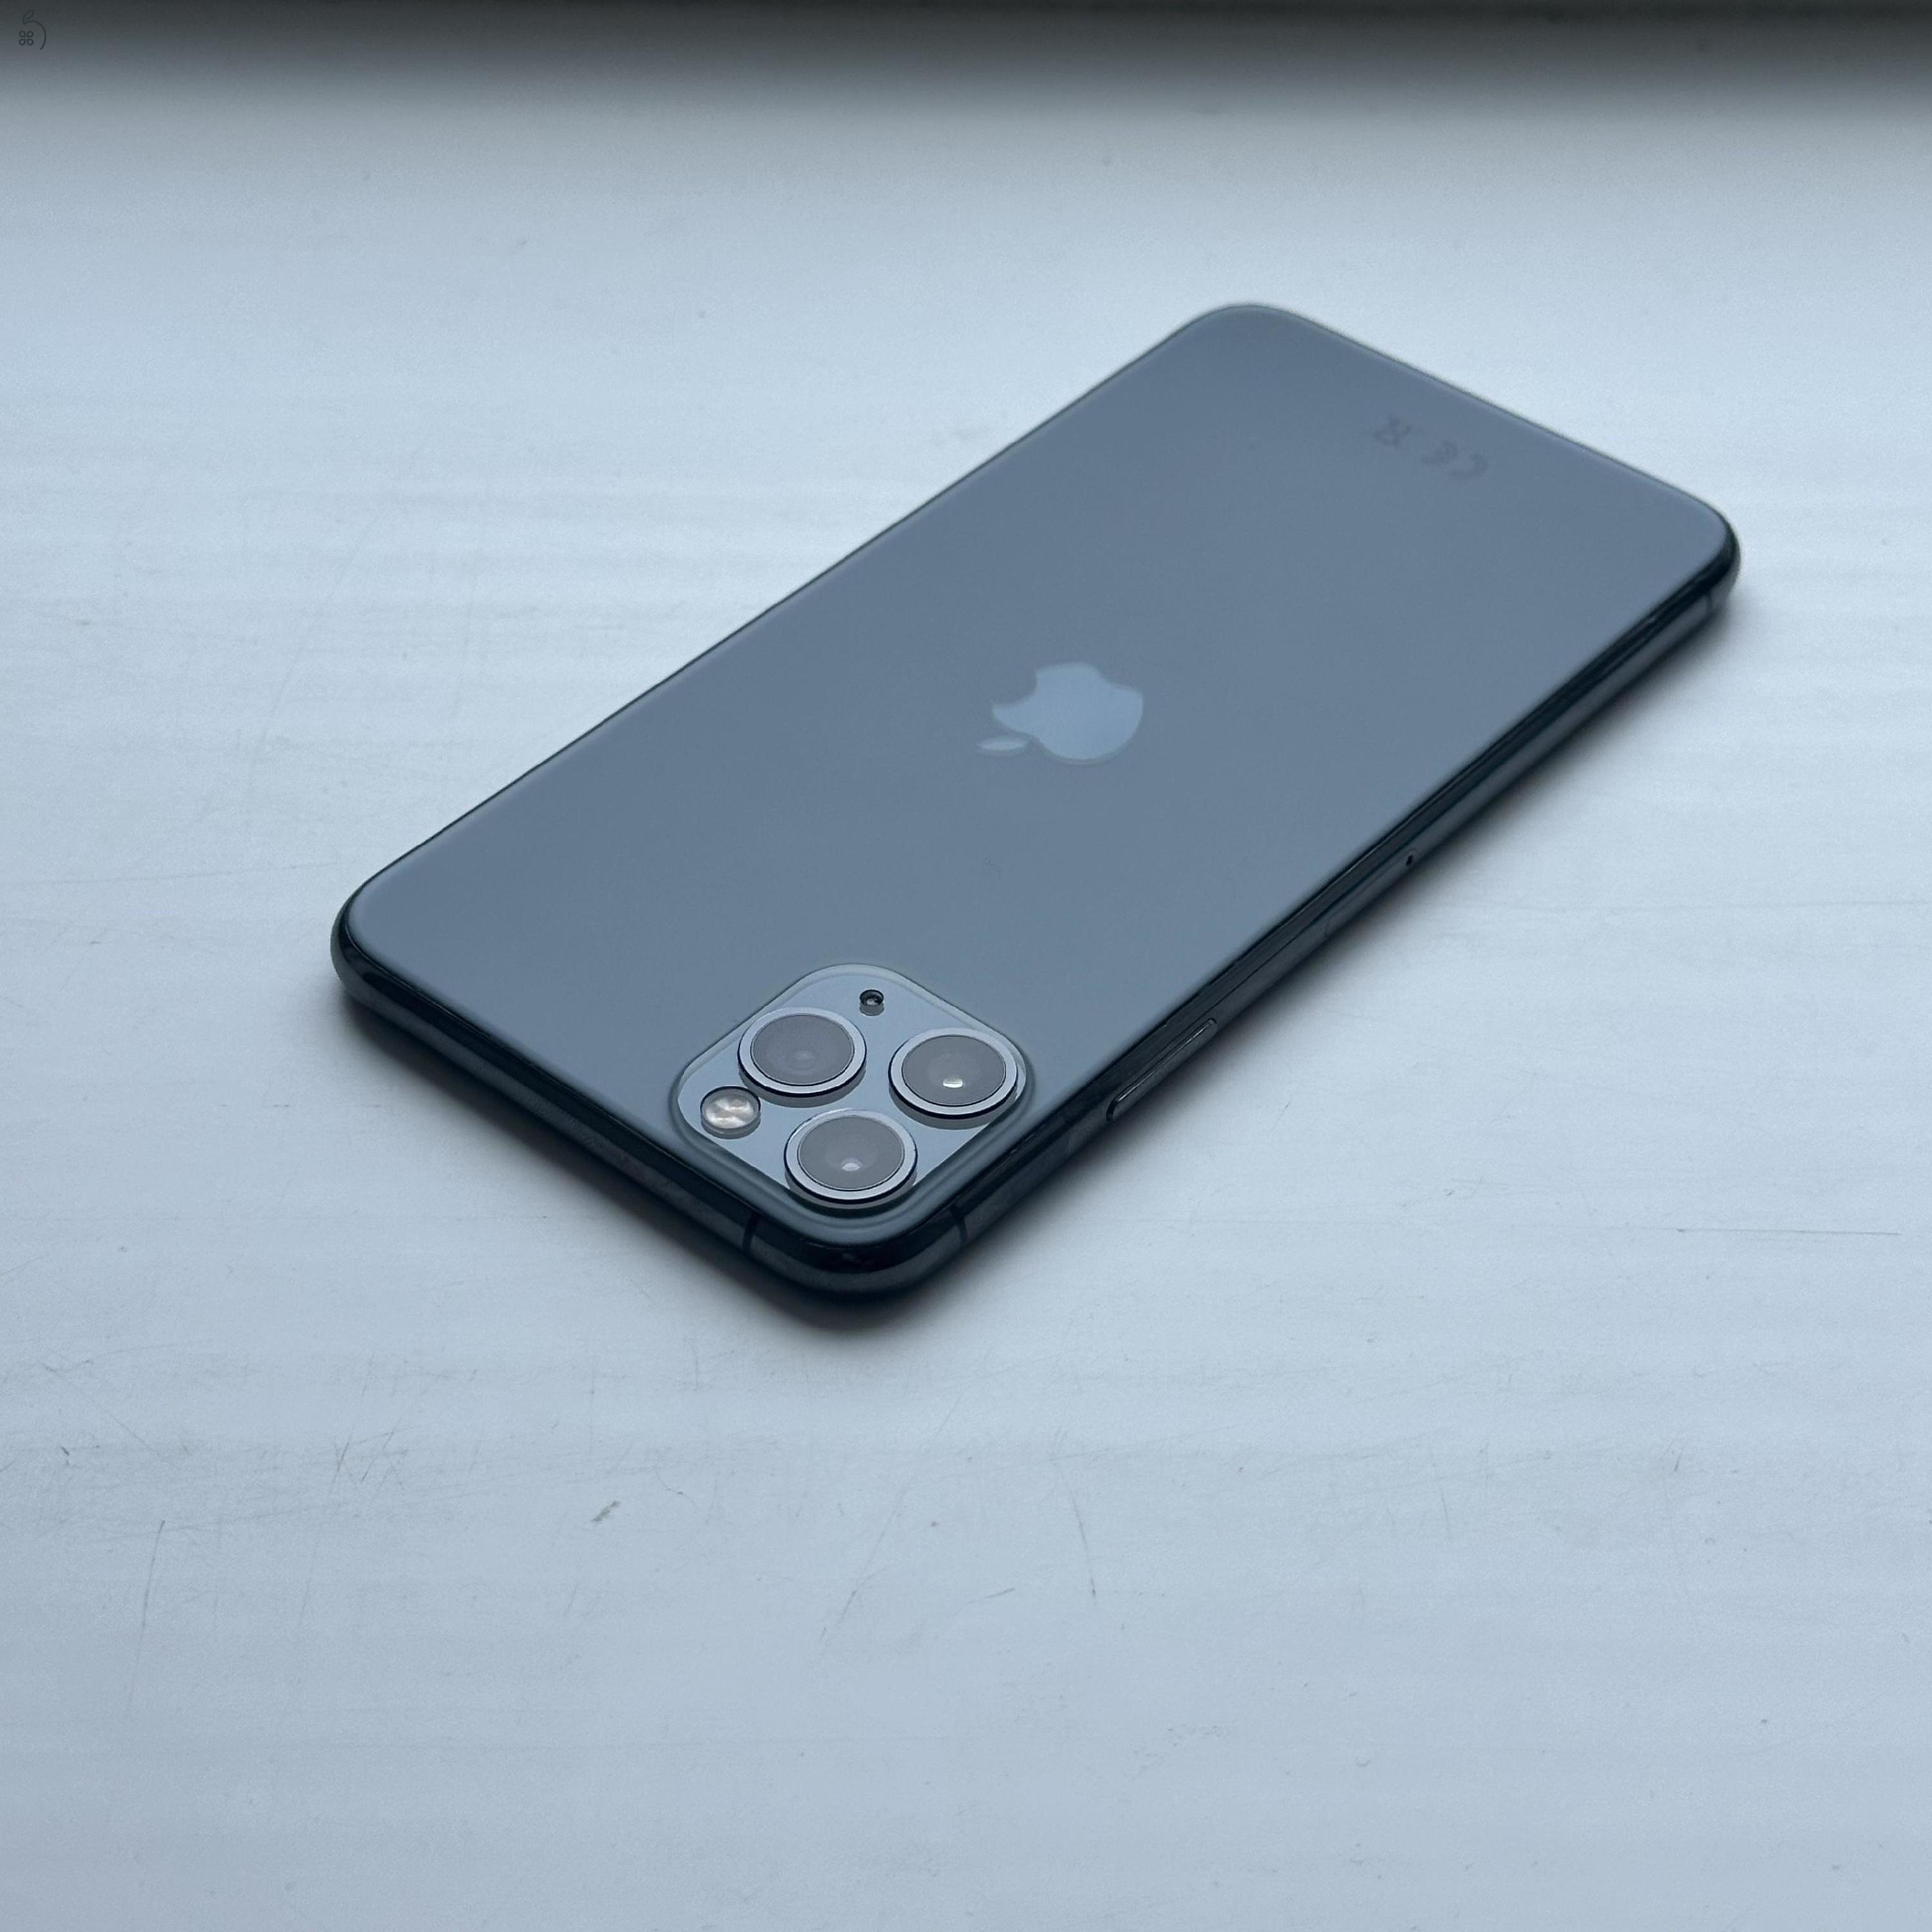 iPhone 11 Pro Max 64GB Space Grey - Kártyfüggetlen, 1 ÉV GARANCIA, 83% Akkumulátor